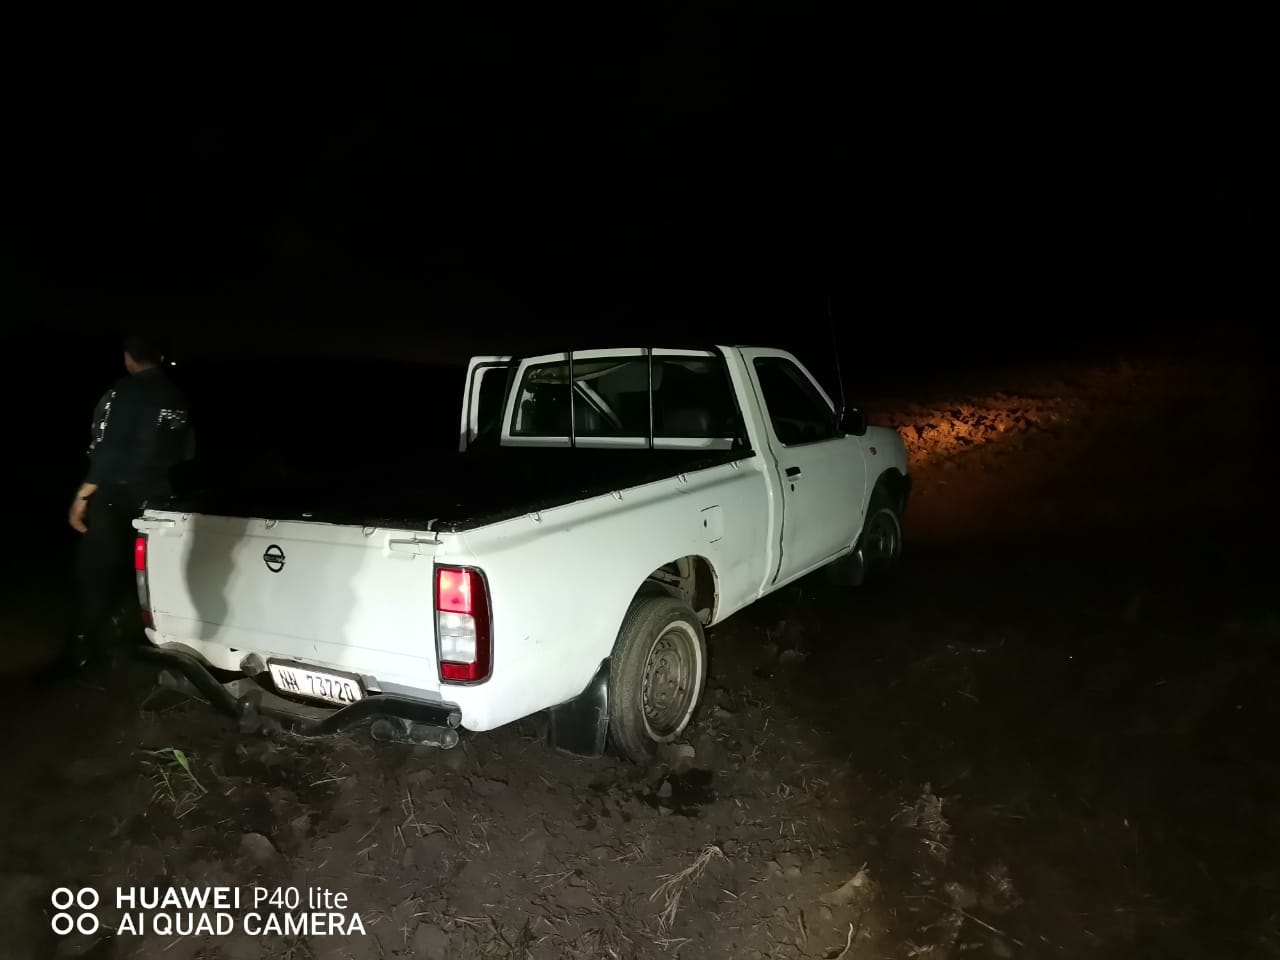 Cable Thieves Abandon Getaway Vehicle: Tongaat - KZN